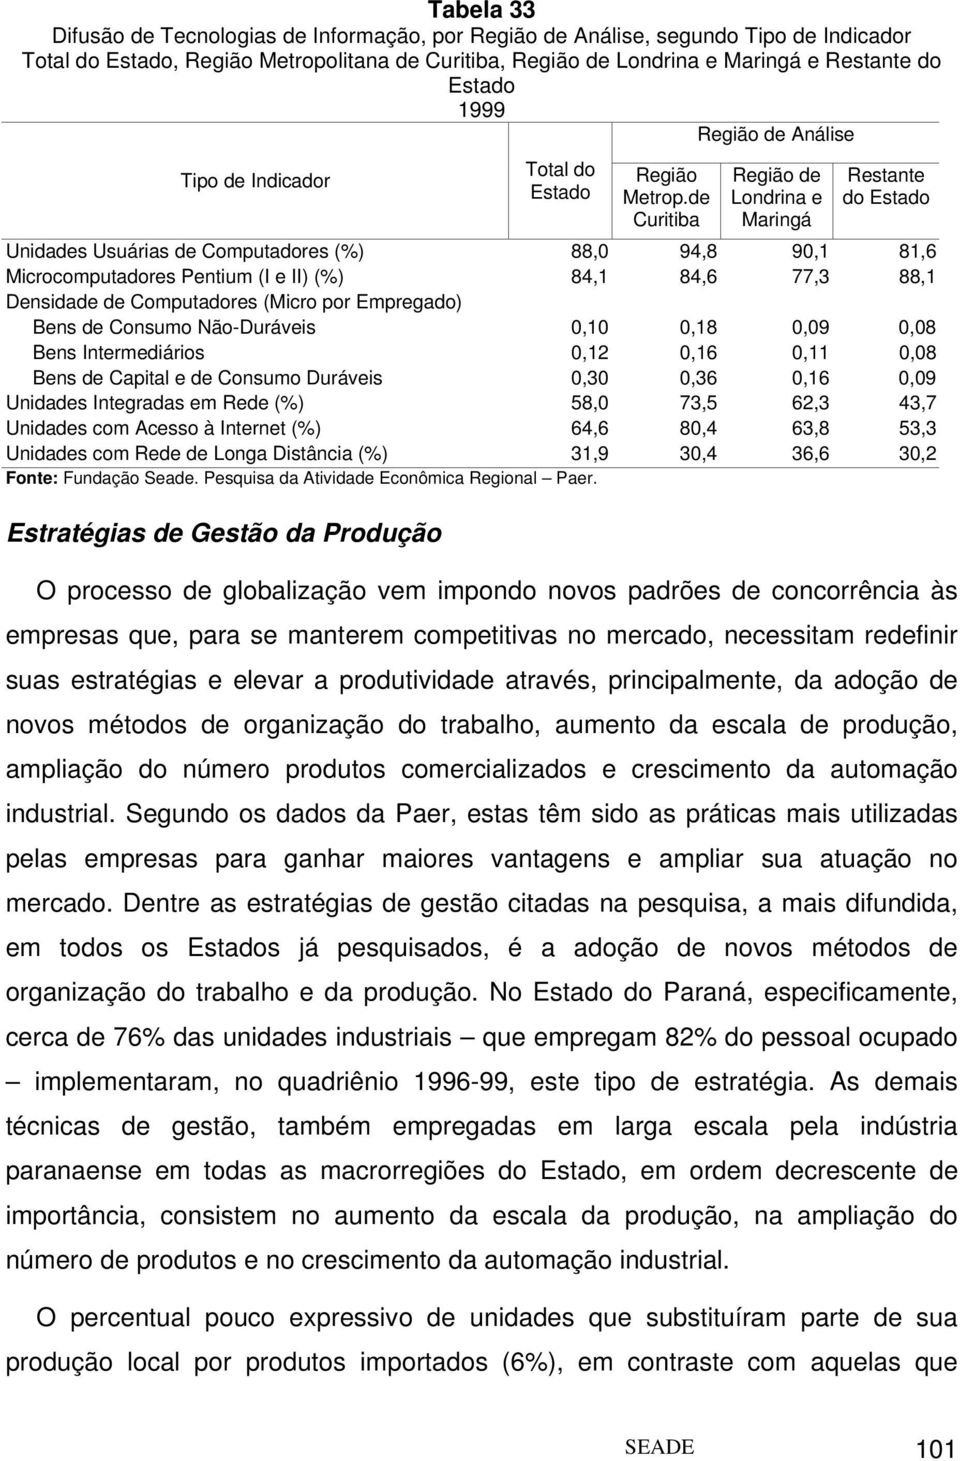 de Curitiba Região de Londrina e Maringá Restante do Estado Unidades Usuárias de Computadores (%) 88,0 94,8 90,1 81,6 Microcomputadores Pentium (I e II) (%) 84,1 84,6 77,3 88,1 Densidade de